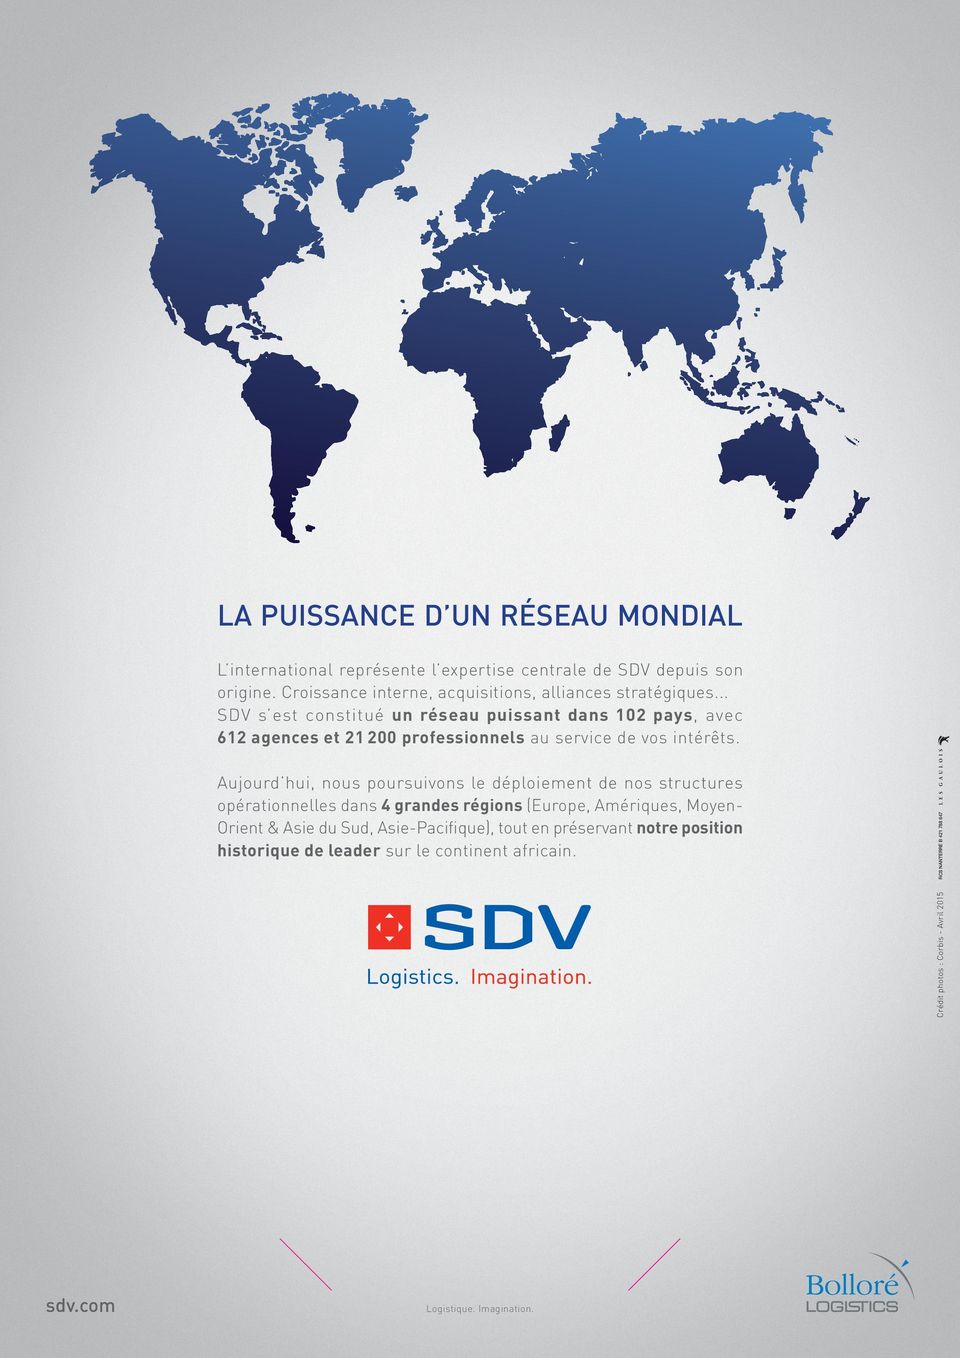 .. SDV s est constitué un réseau puissant dans 102 pays, avec 612 agences et 21 200 professionnels au service de vos intérêts.